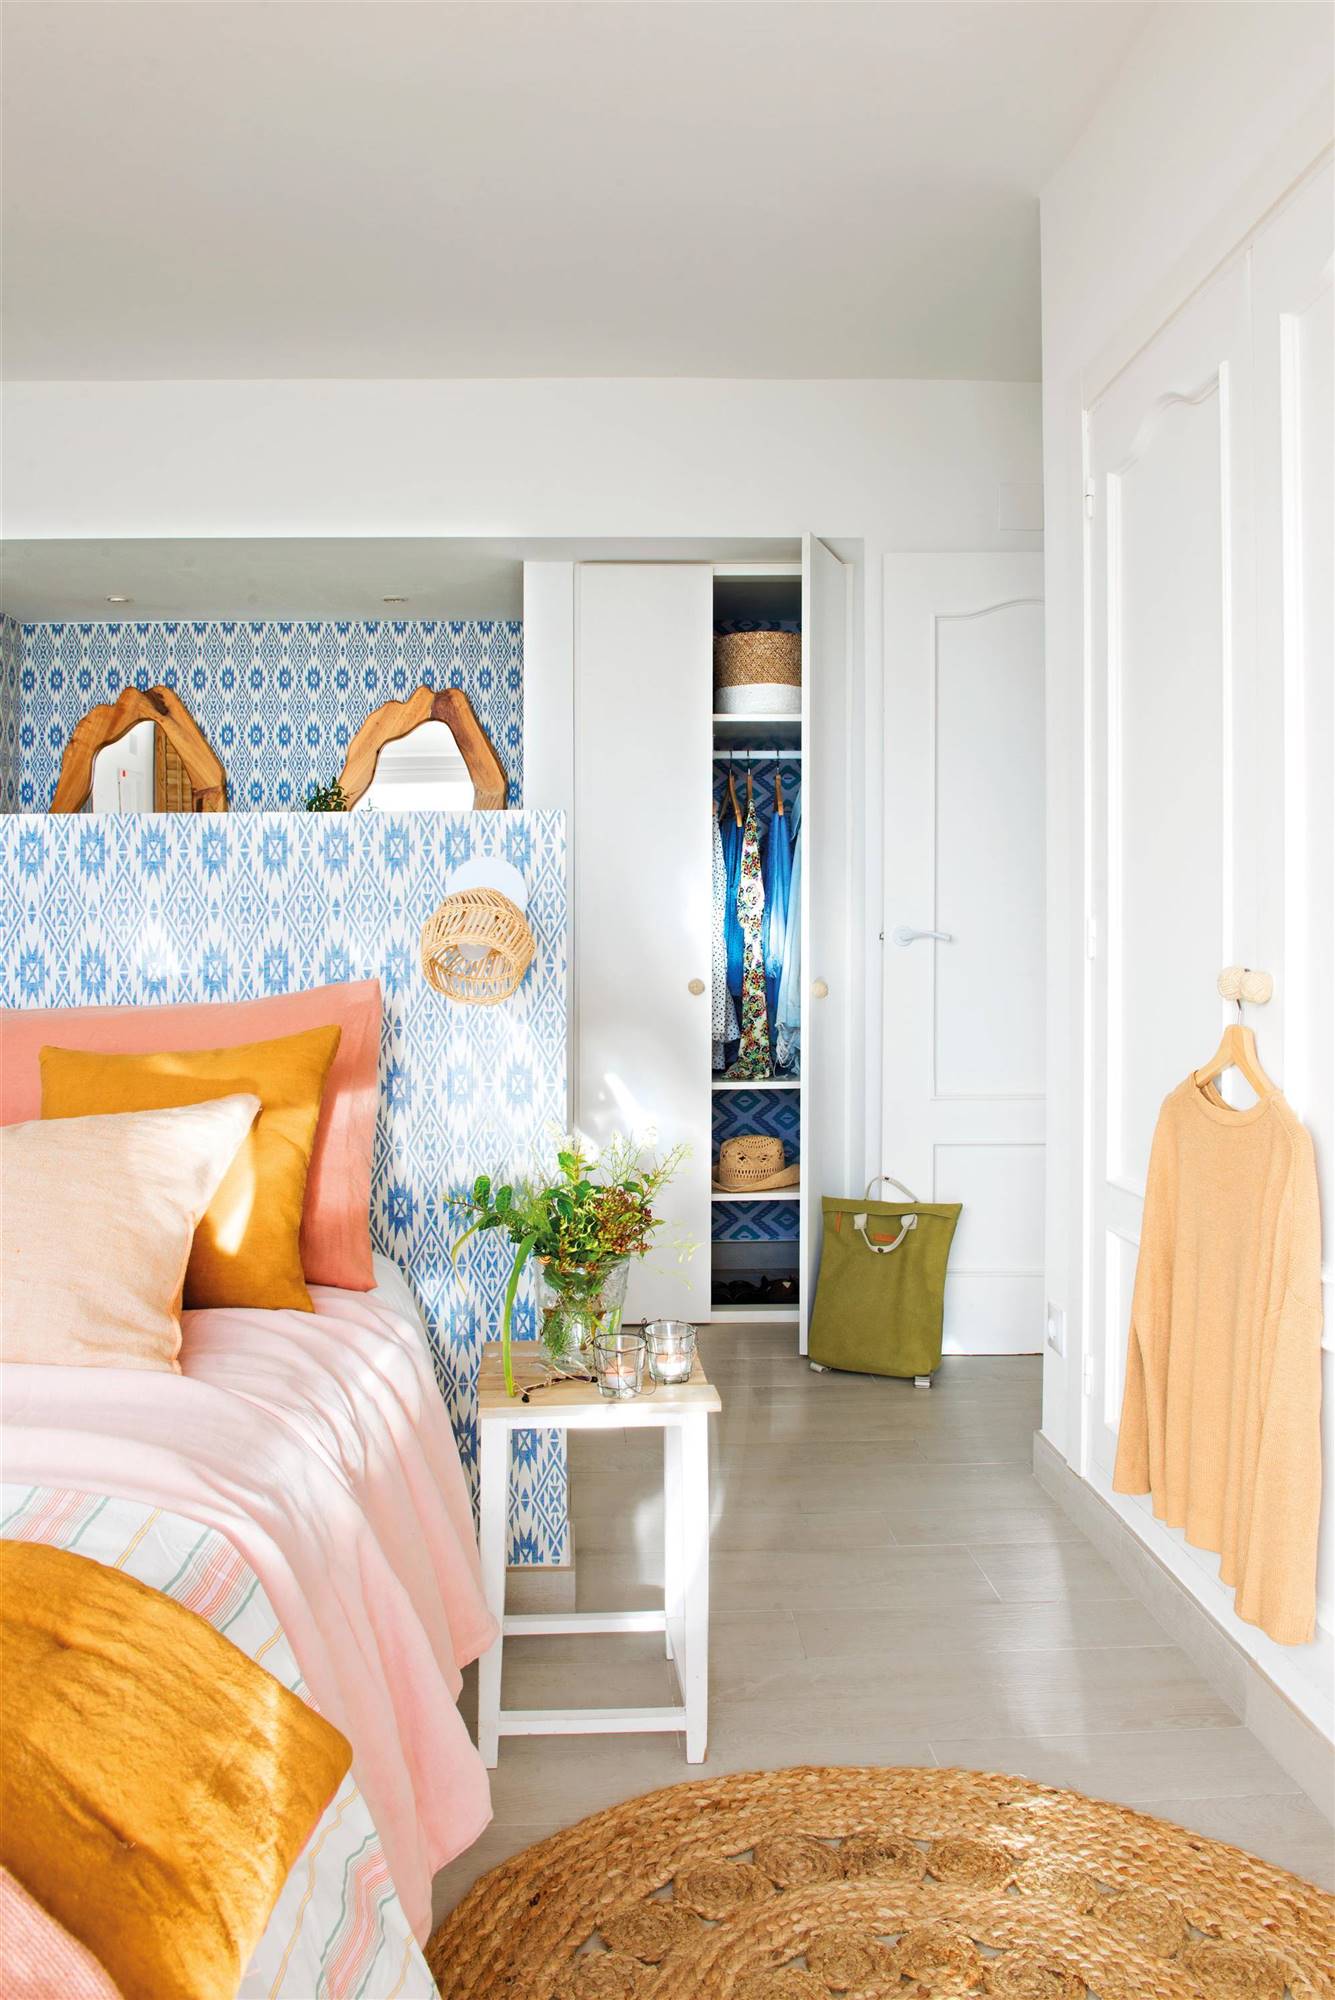 Dormitorio de primavera con cabecero empapelado con motivos geométricos en azul y baño detrás.